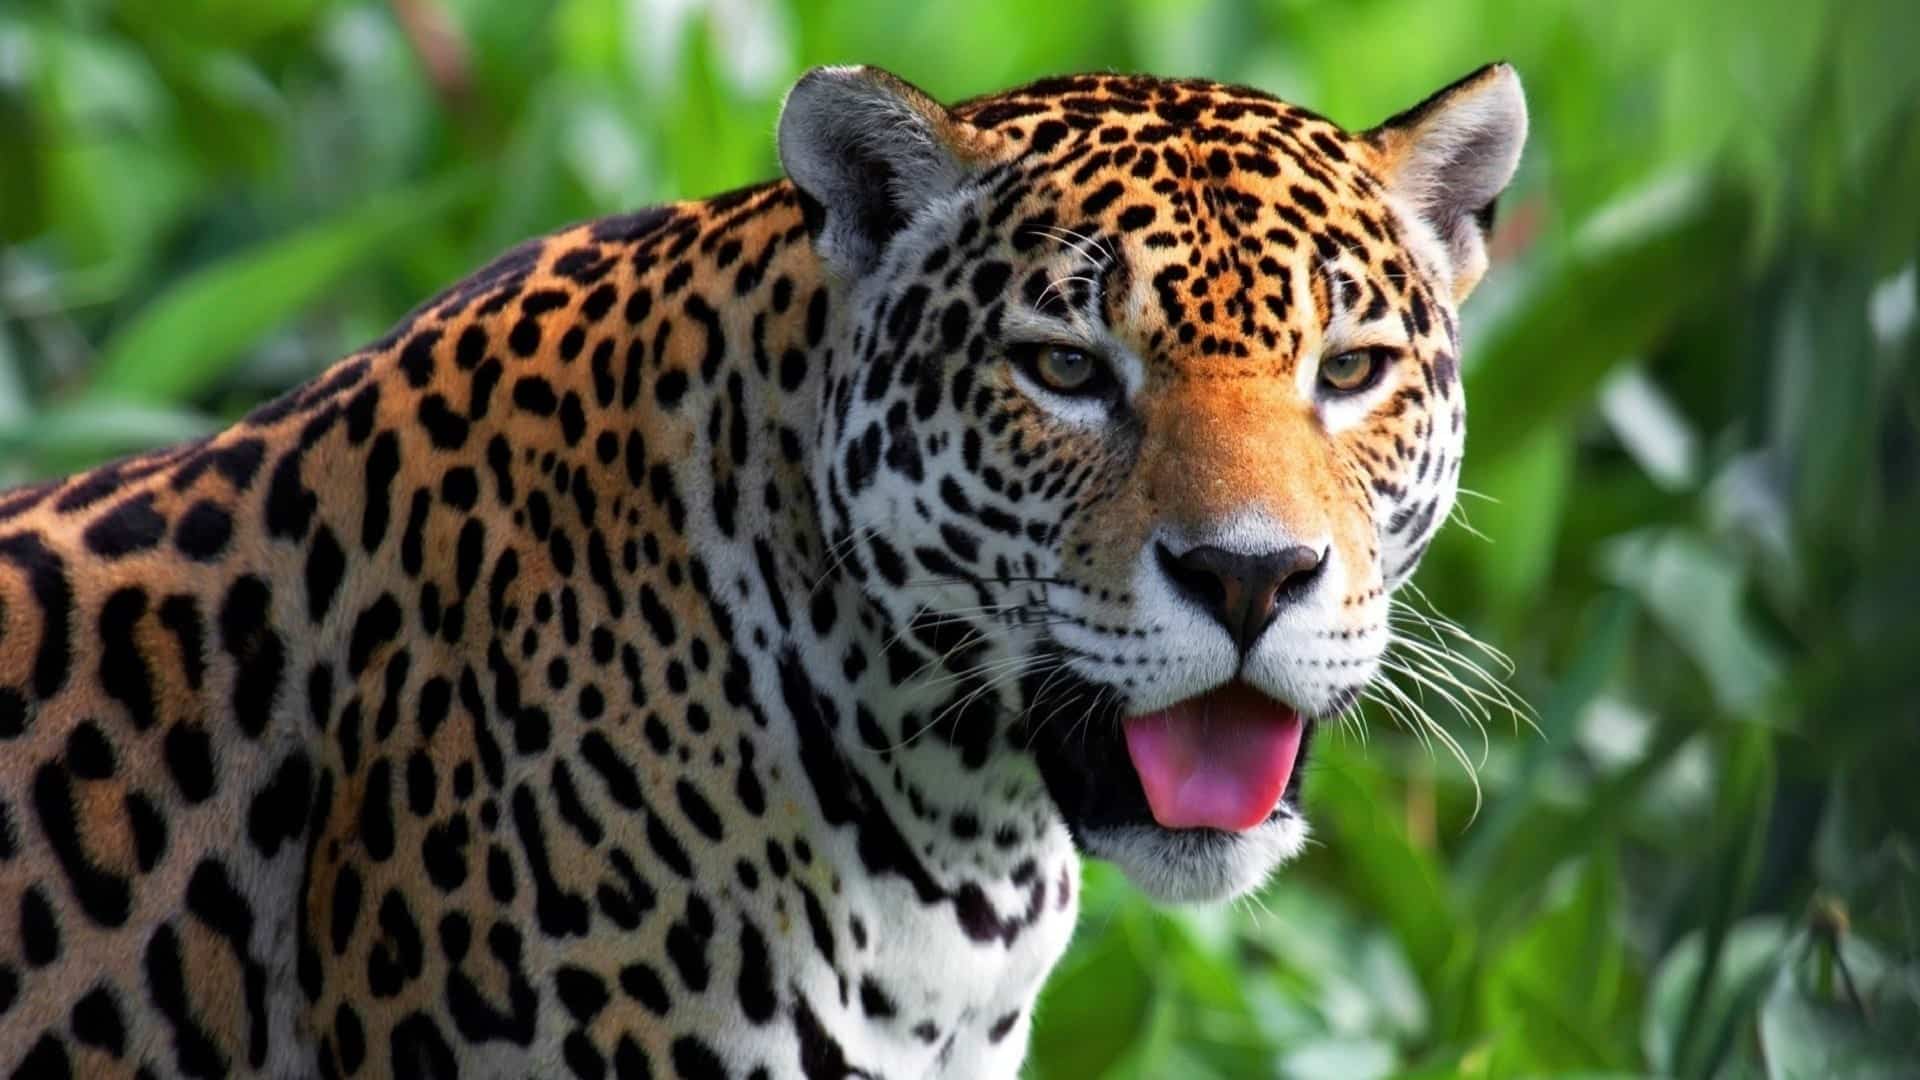 Animais do cerrado - lista de 20 animais deste bioma brasileiro